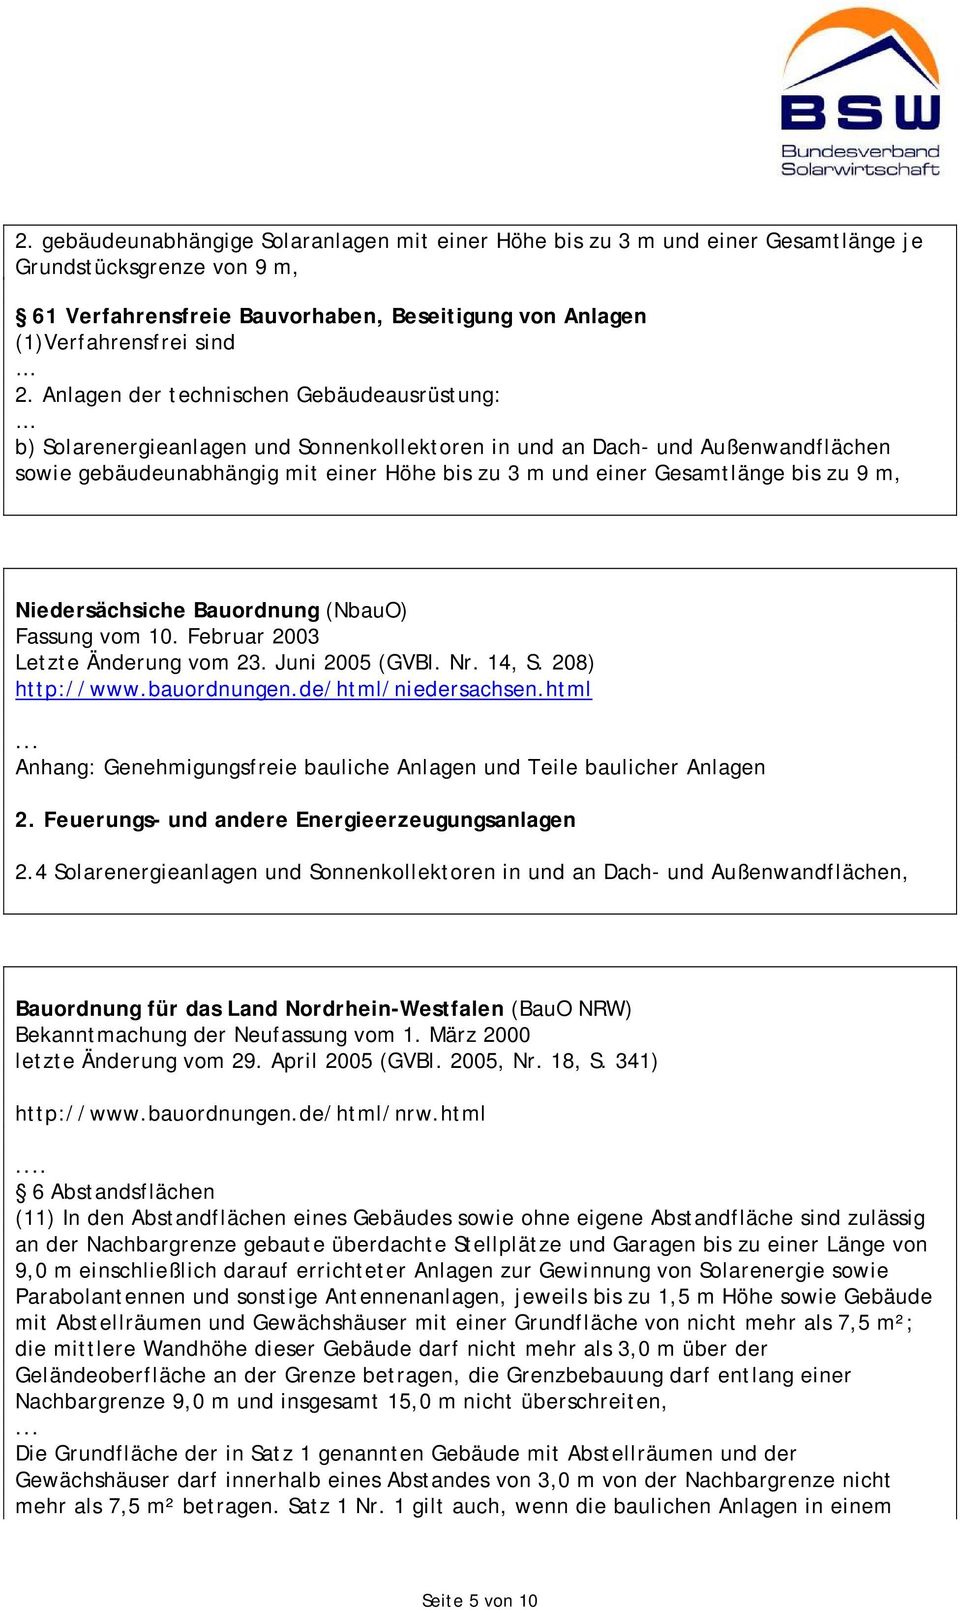 bis zu 9 m, Niedersächsiche Bauordnung (NbauO) Fassung vom 10. Februar 2003 Letzte Änderung vom 23. Juni 2005 (GVBl. Nr. 14, S. 208) http://www.bauordnungen.de/html/niedersachsen.